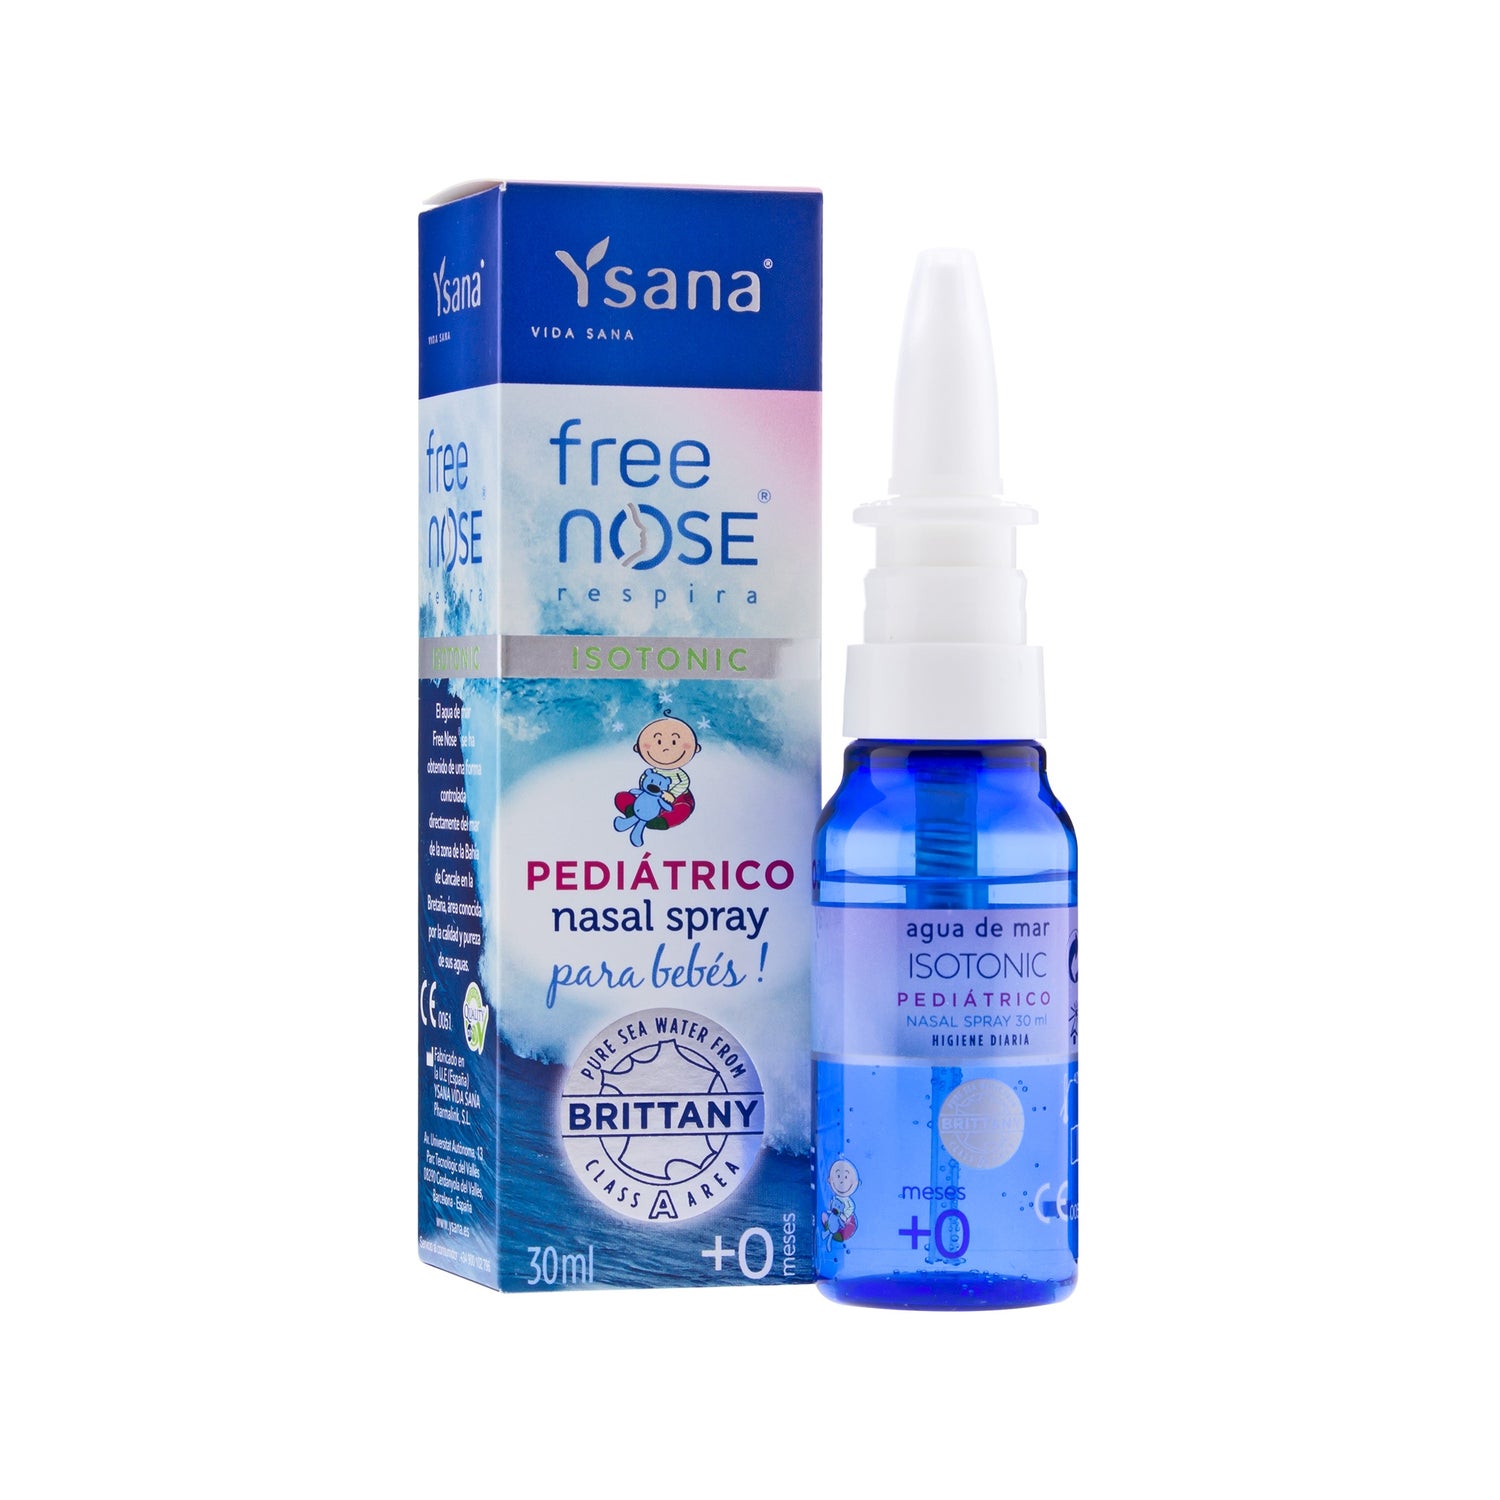 Free Nose® Agua de Mar Hipertónica Fuerza Fuerte espray nasal 120ml de  Ysana® Vida Sana